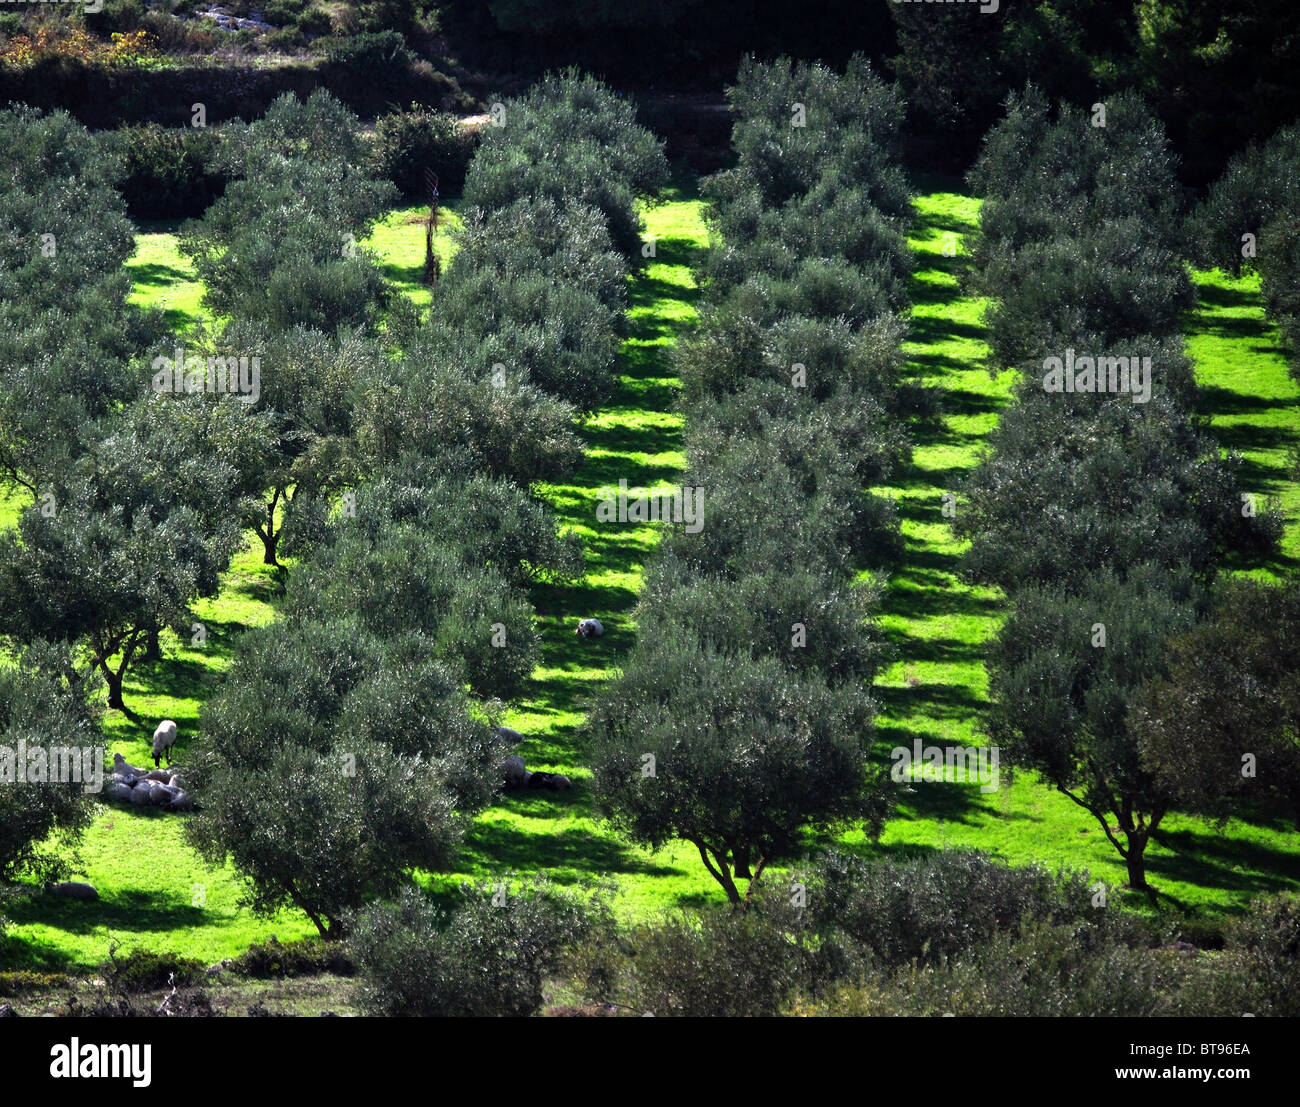 Plantation d'oliviers près de Porto Vromi Zante (Zakynthos,), îles Ioniennes, Grèce Banque D'Images